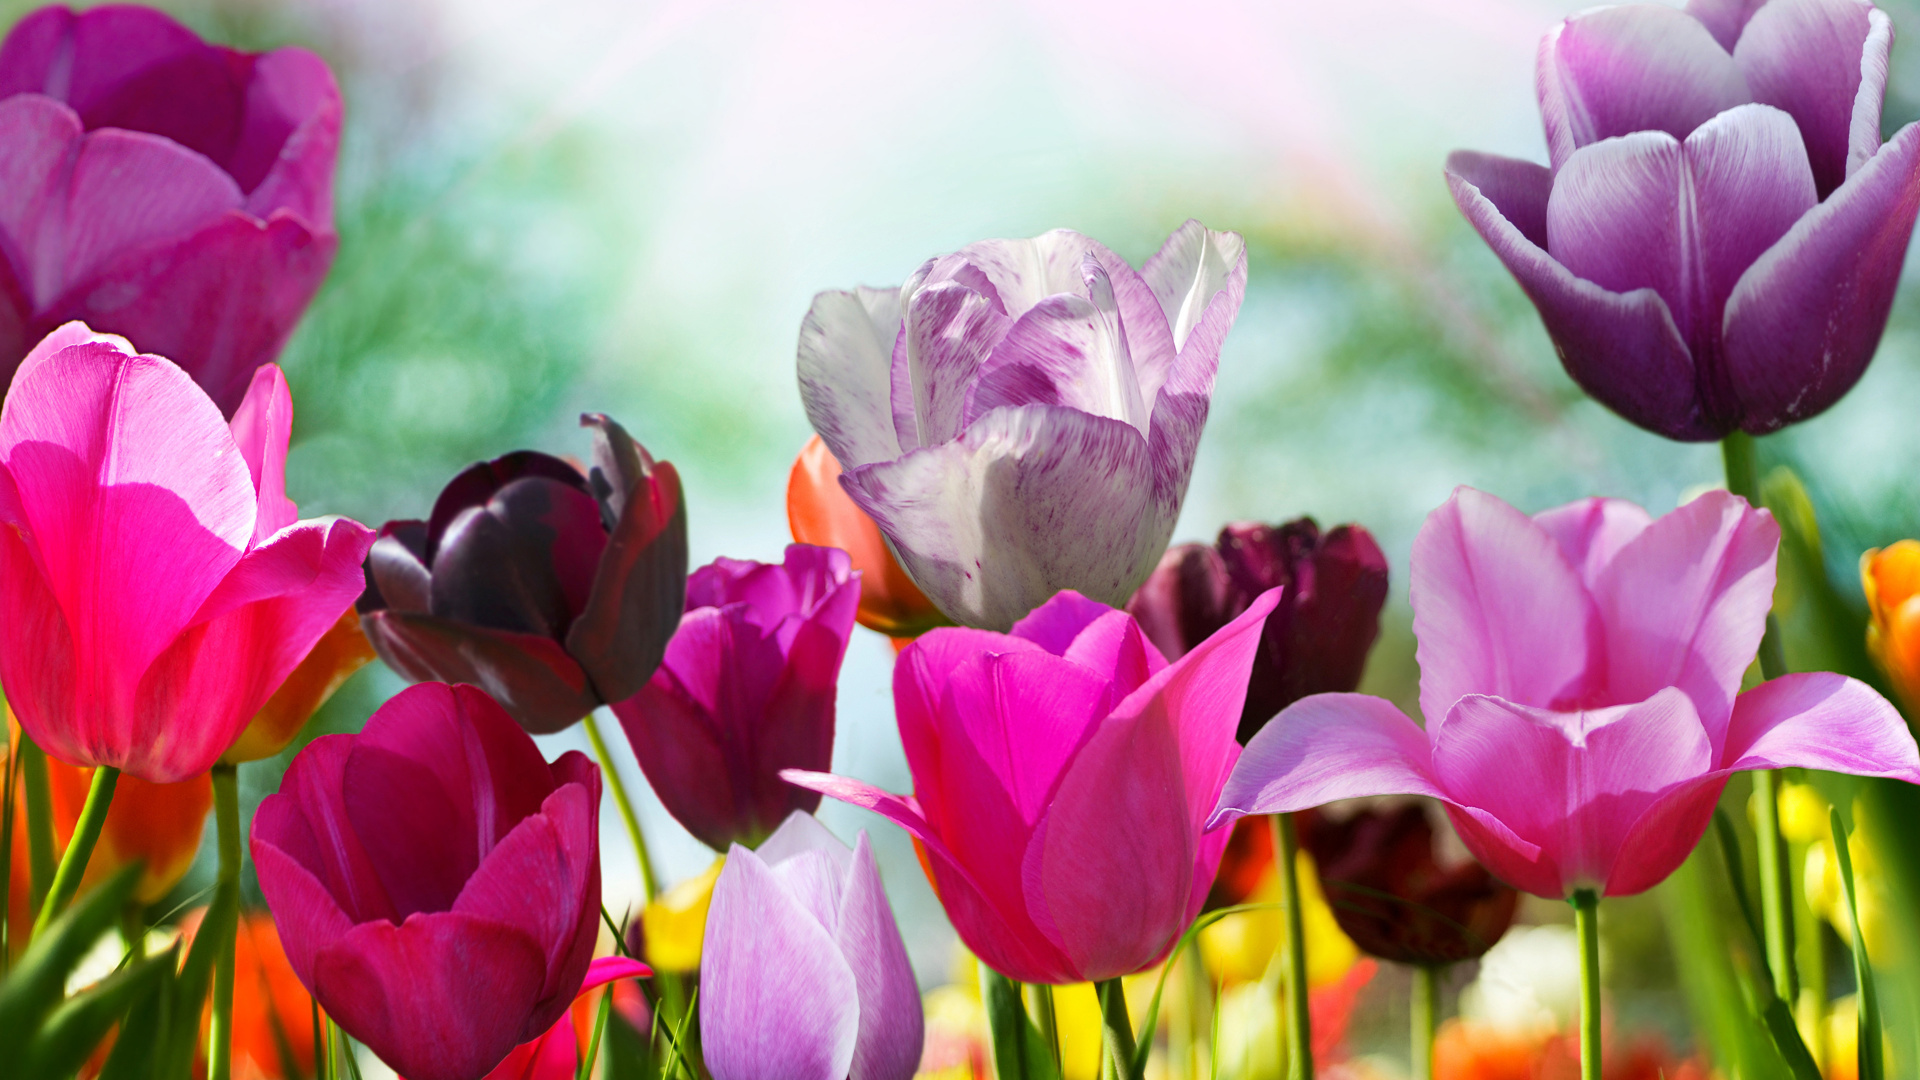 Tulipes Violettes et Roses en Fleurs Pendant la Journée. Wallpaper in 1920x1080 Resolution